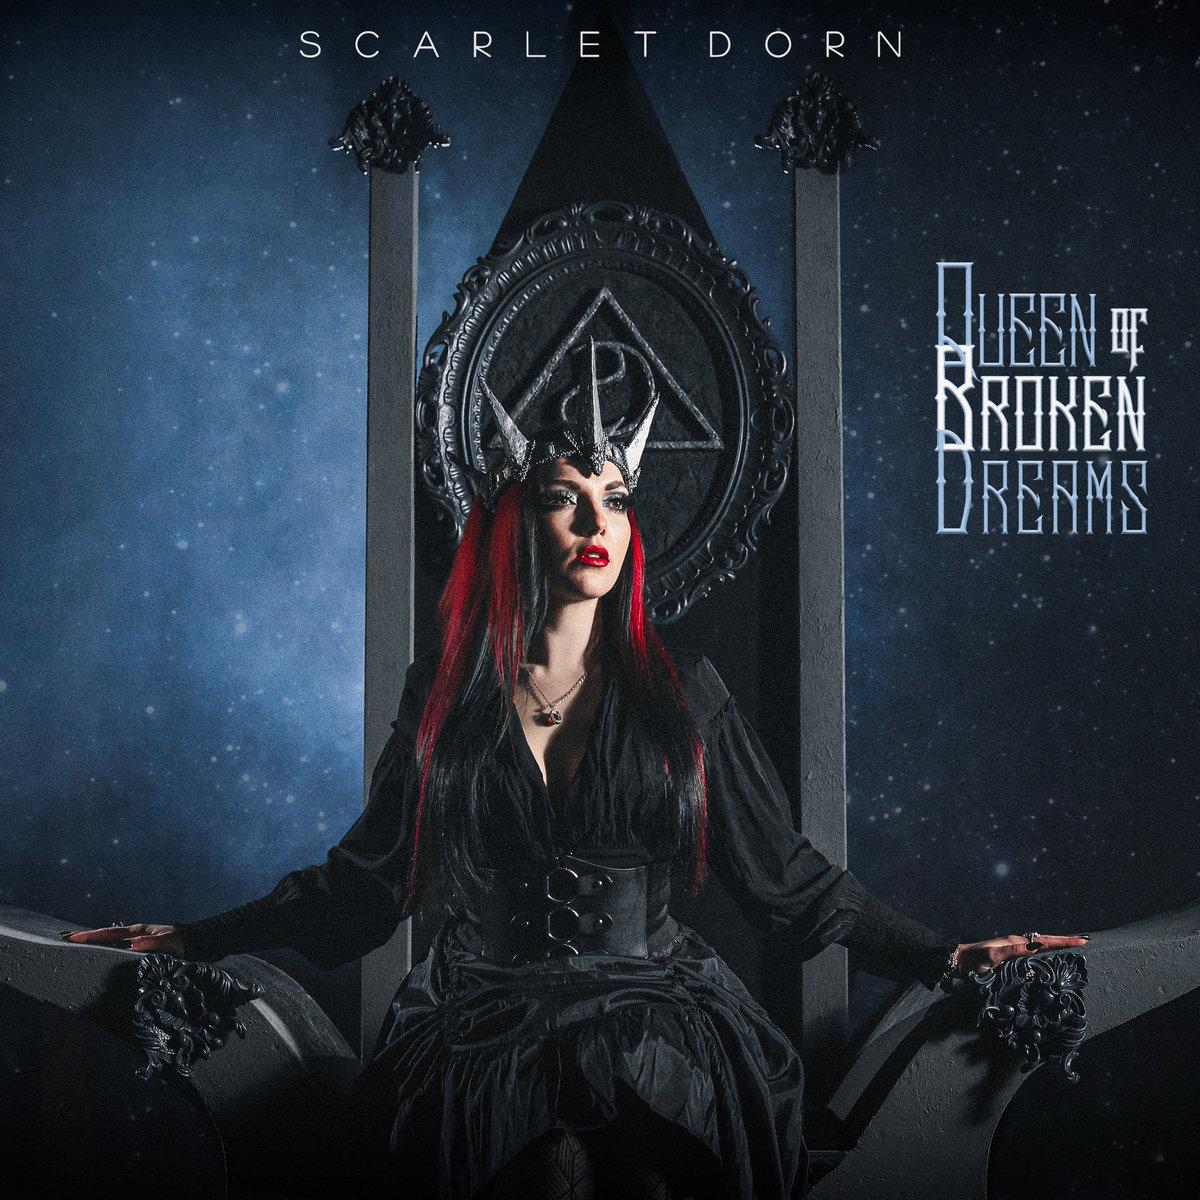 Scarlet dorn new album